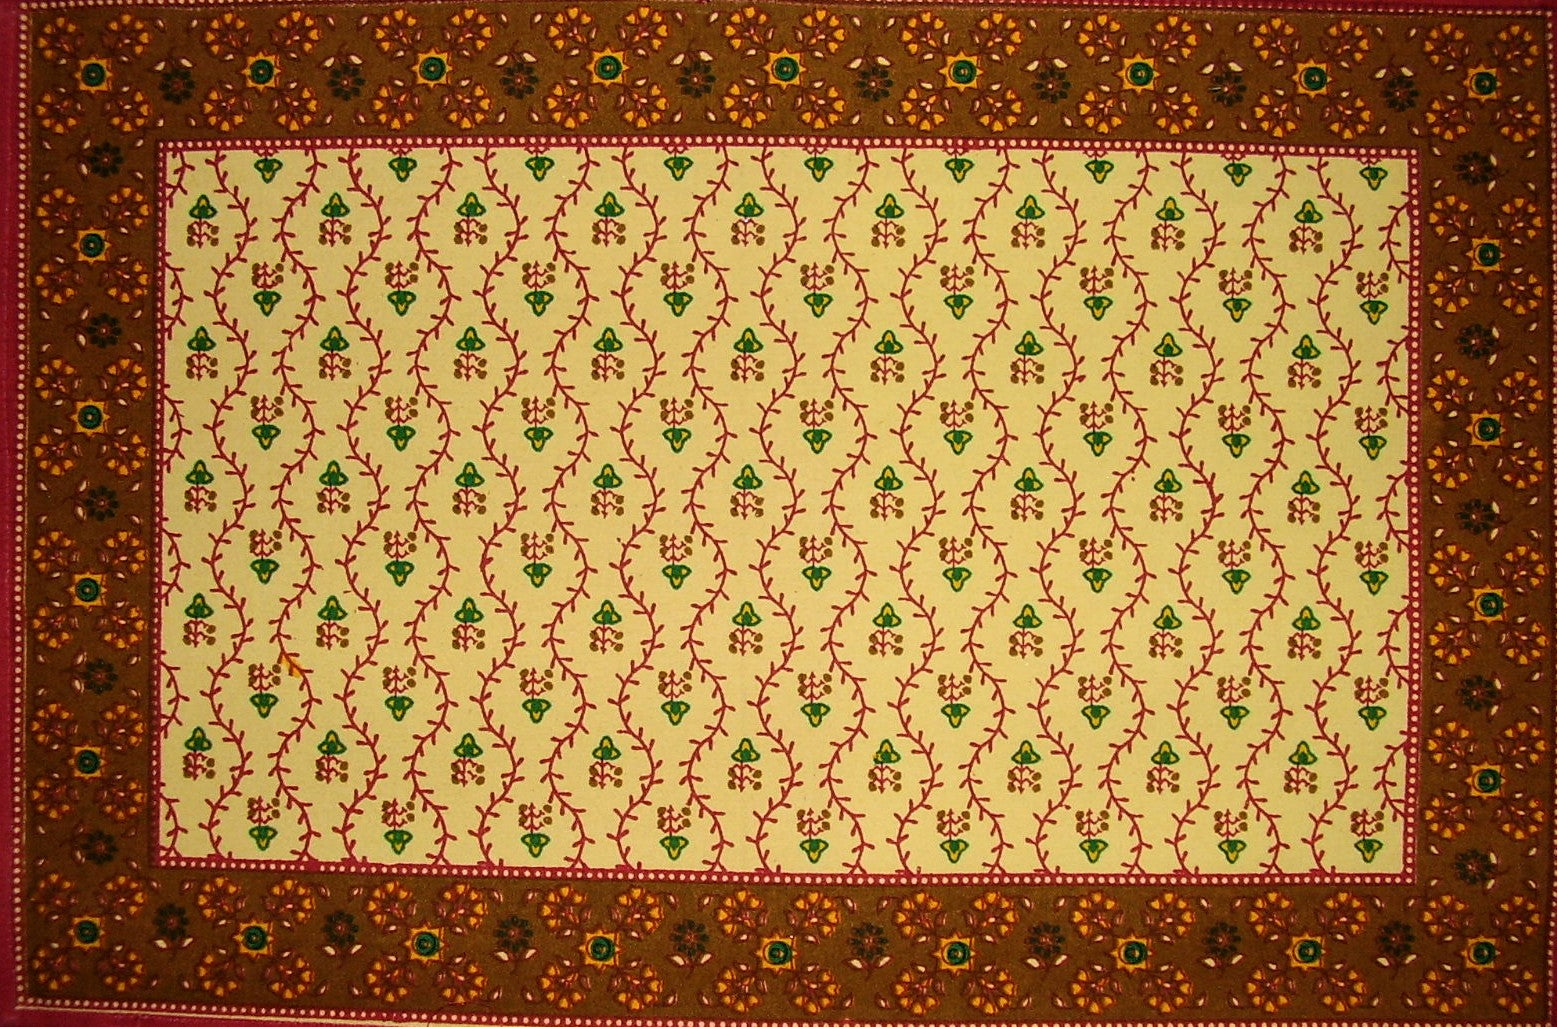 Mantel individual de algodón con estampado Buti, 19" x 13", rojo